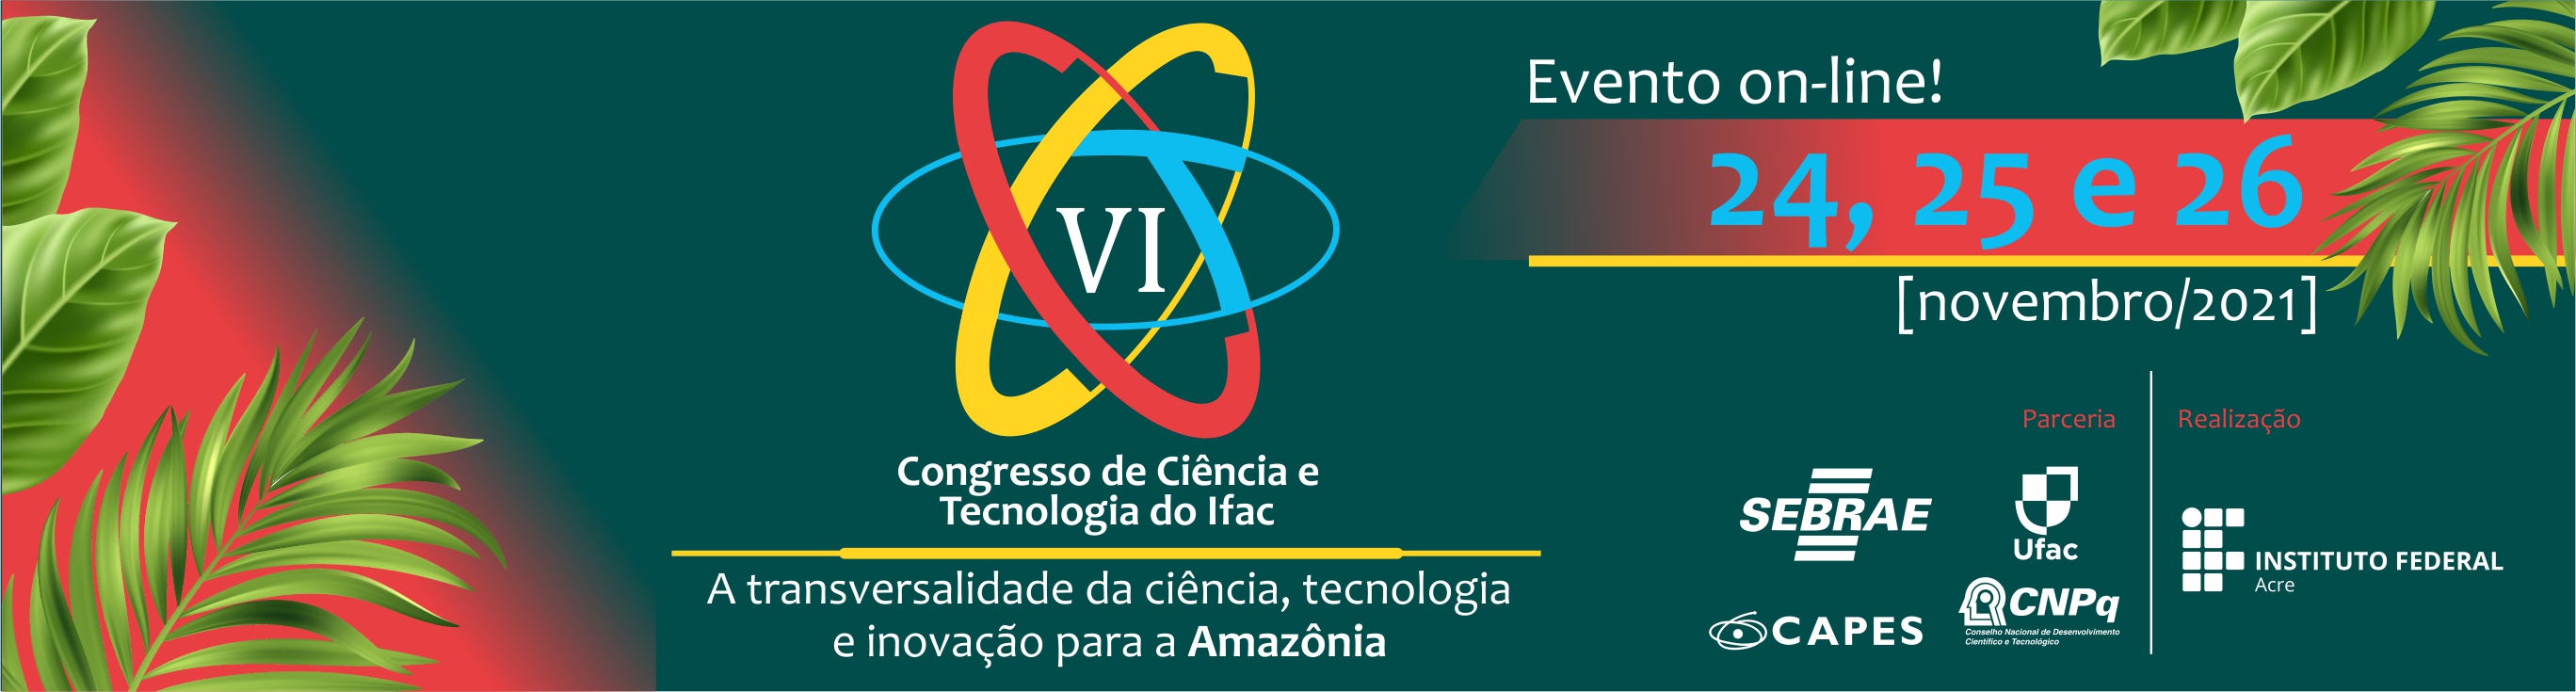 banner do VI CONGRESSO DE CIÊNCIA E TECNOLOGIA DO INSTITUTO FEDERAL DO ACRE - VI CONC&T